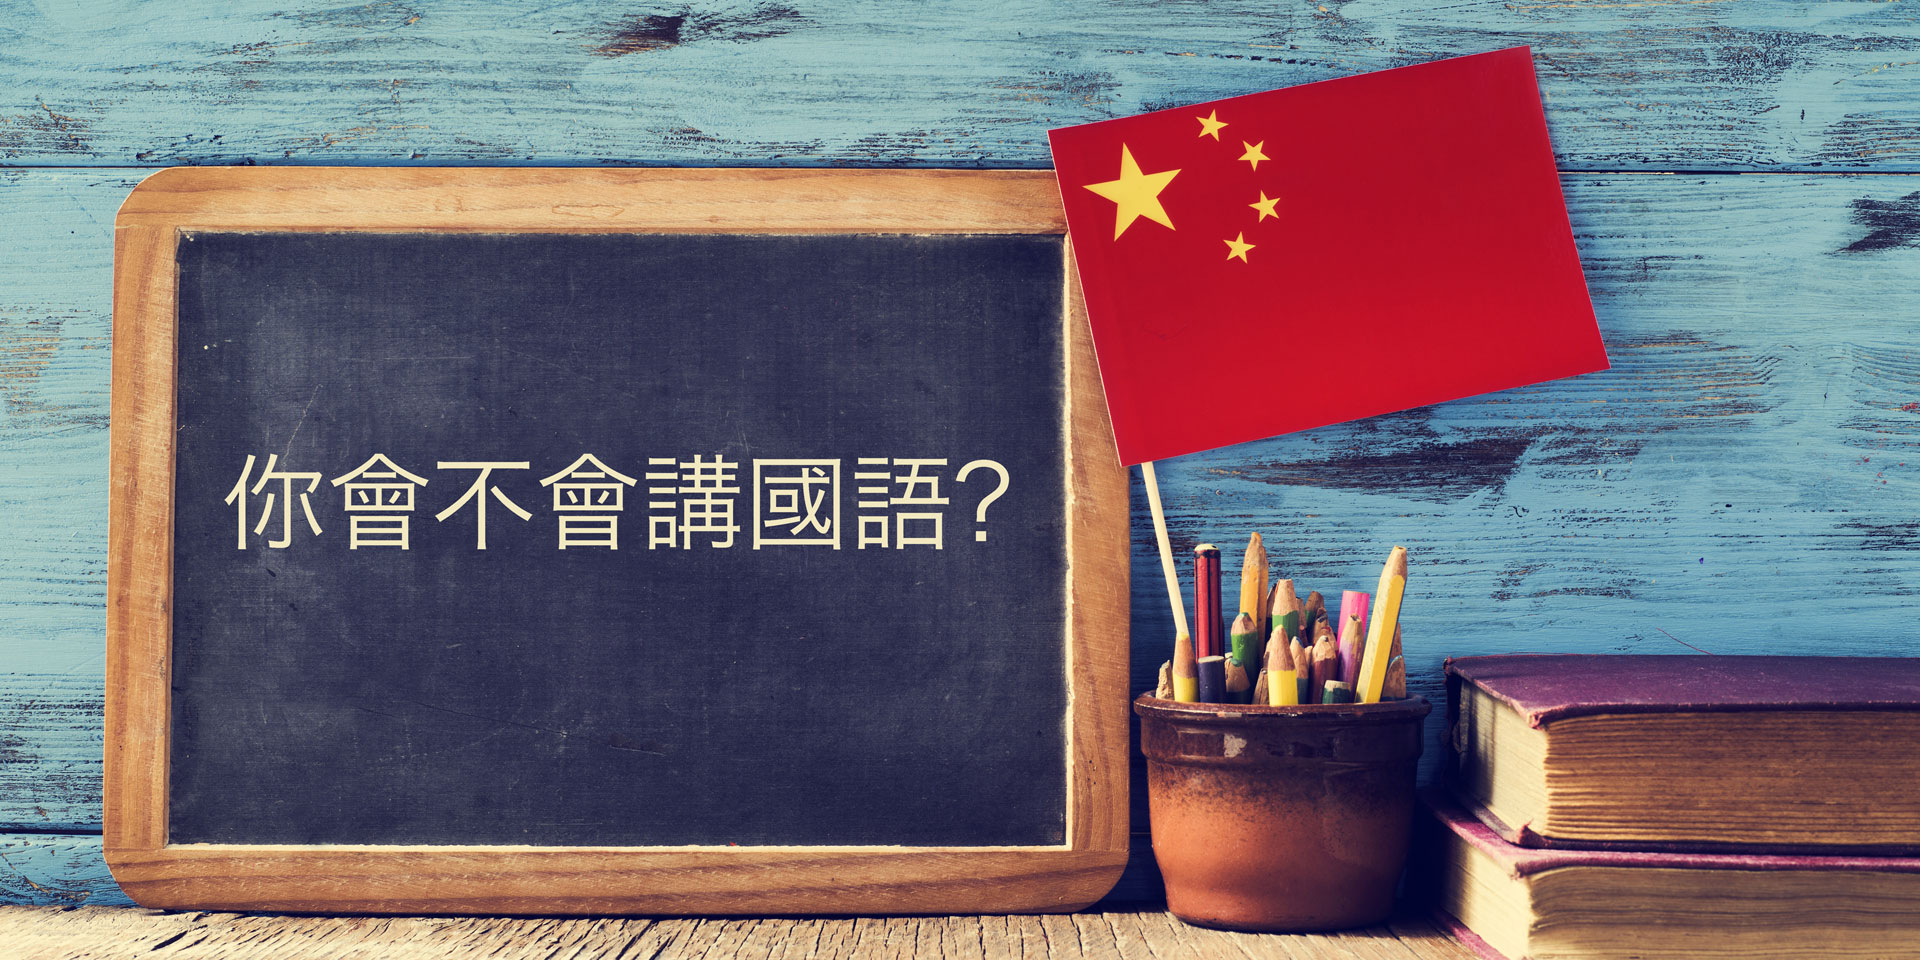 Les nouvelles règles en matière d’enseignement pèsent sur le secteur technologique chinois